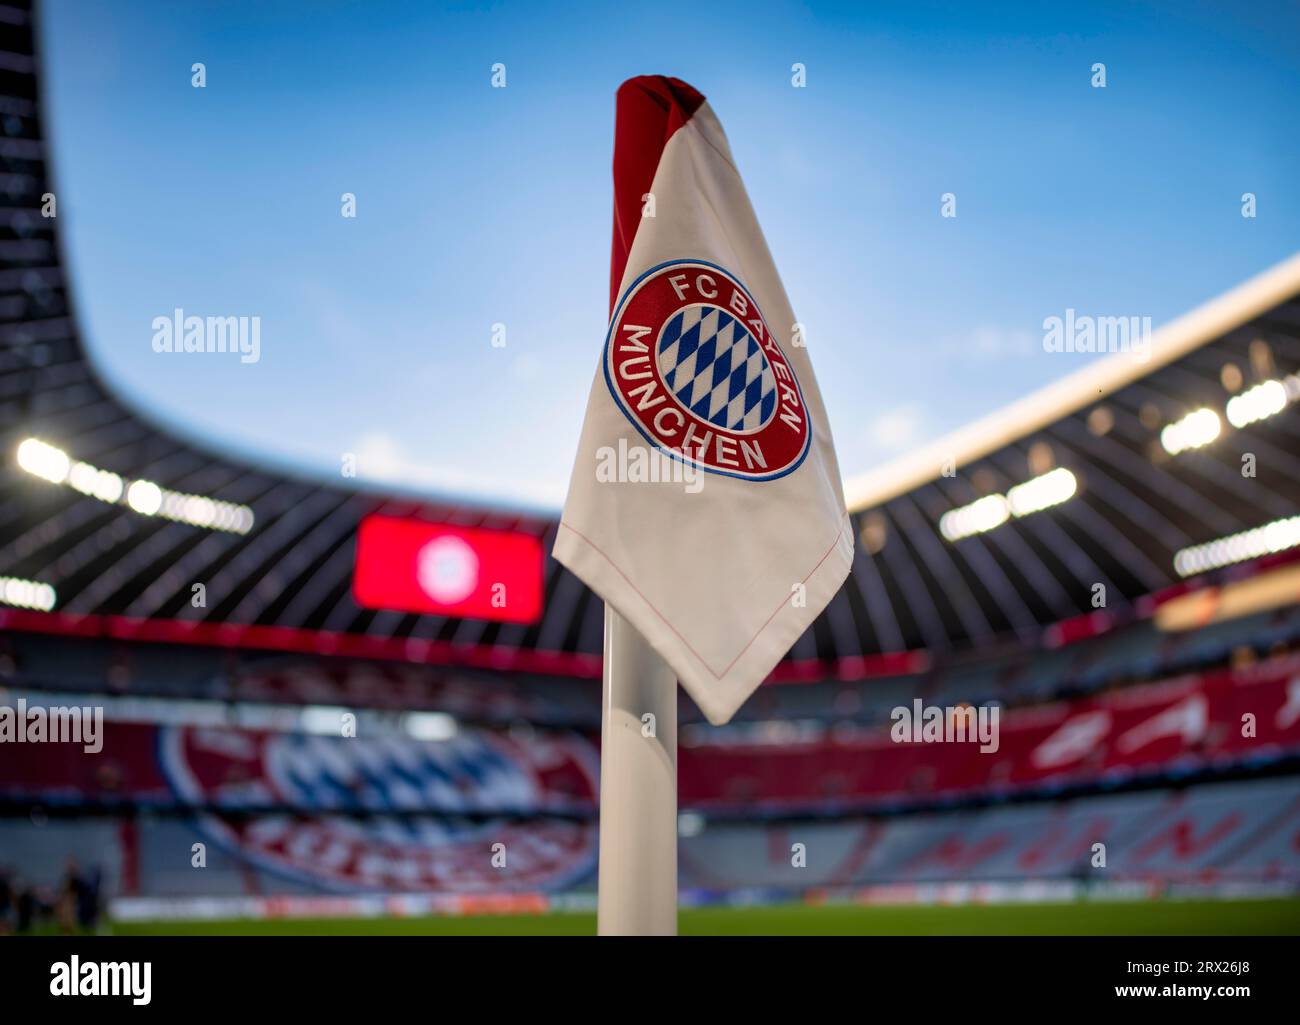 Drapeau d'angle, tableau d'affichage, logo, FC Bayern, tribune, heure bleue, Ligue des Champions, Allianz Arena, Munich, Bavière, Allemagne Banque D'Images